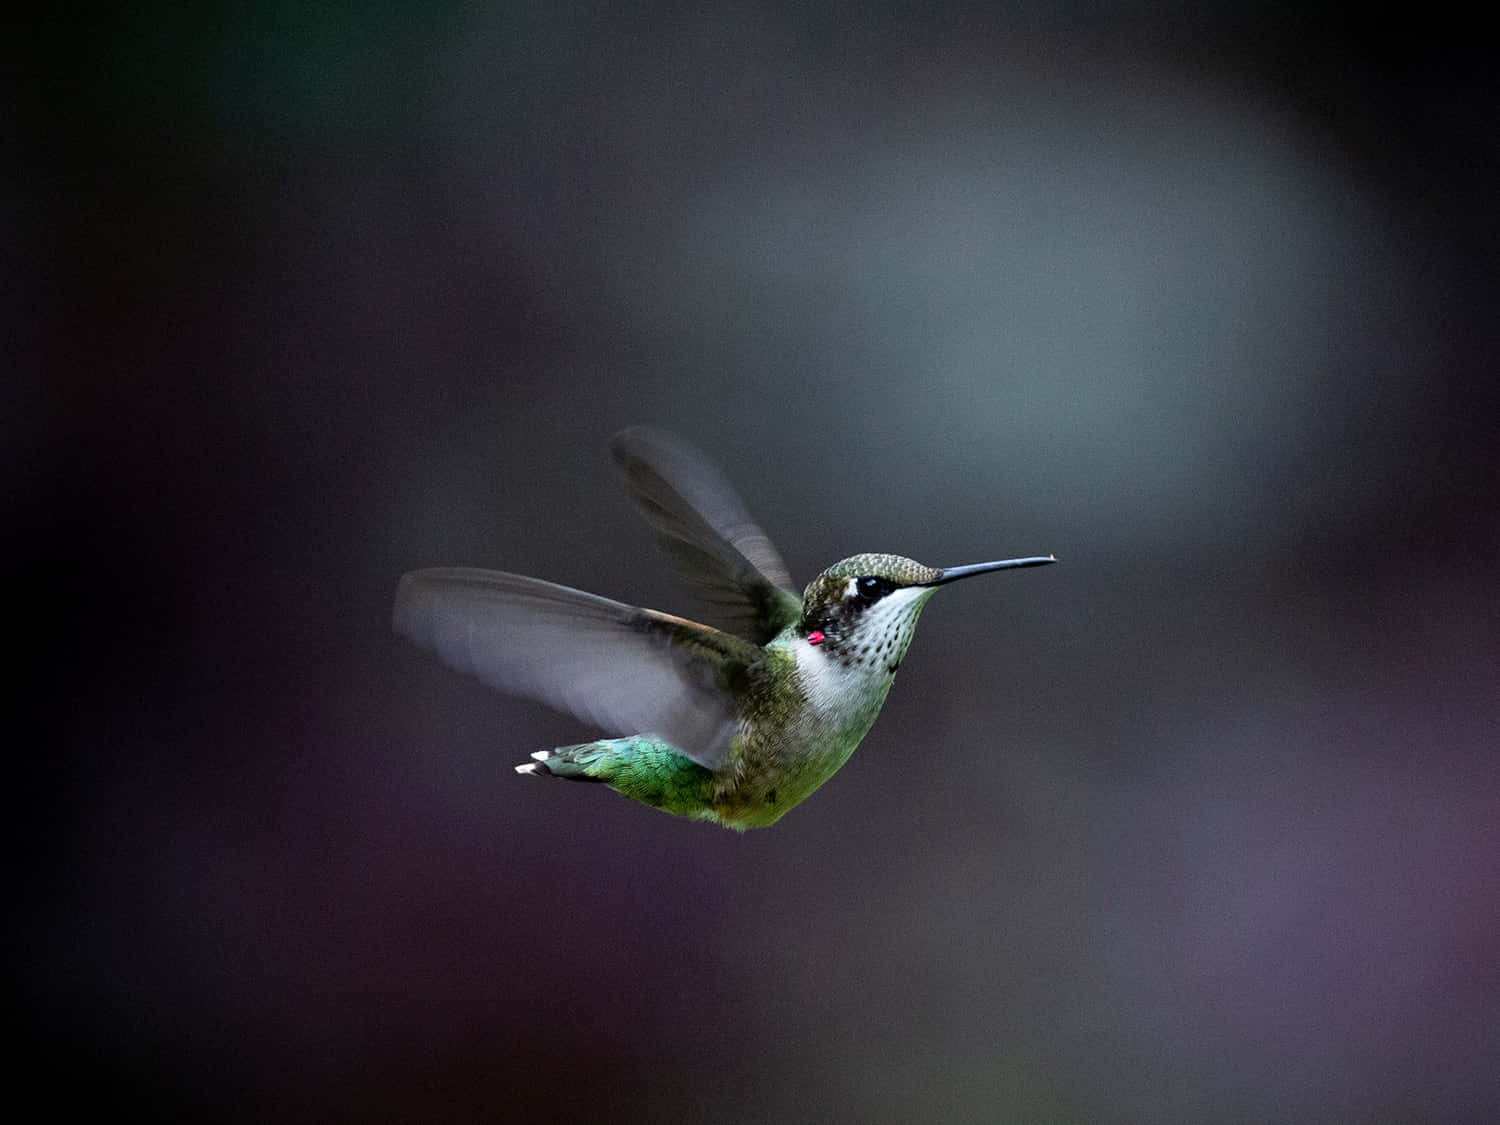 A hummingbird in flight